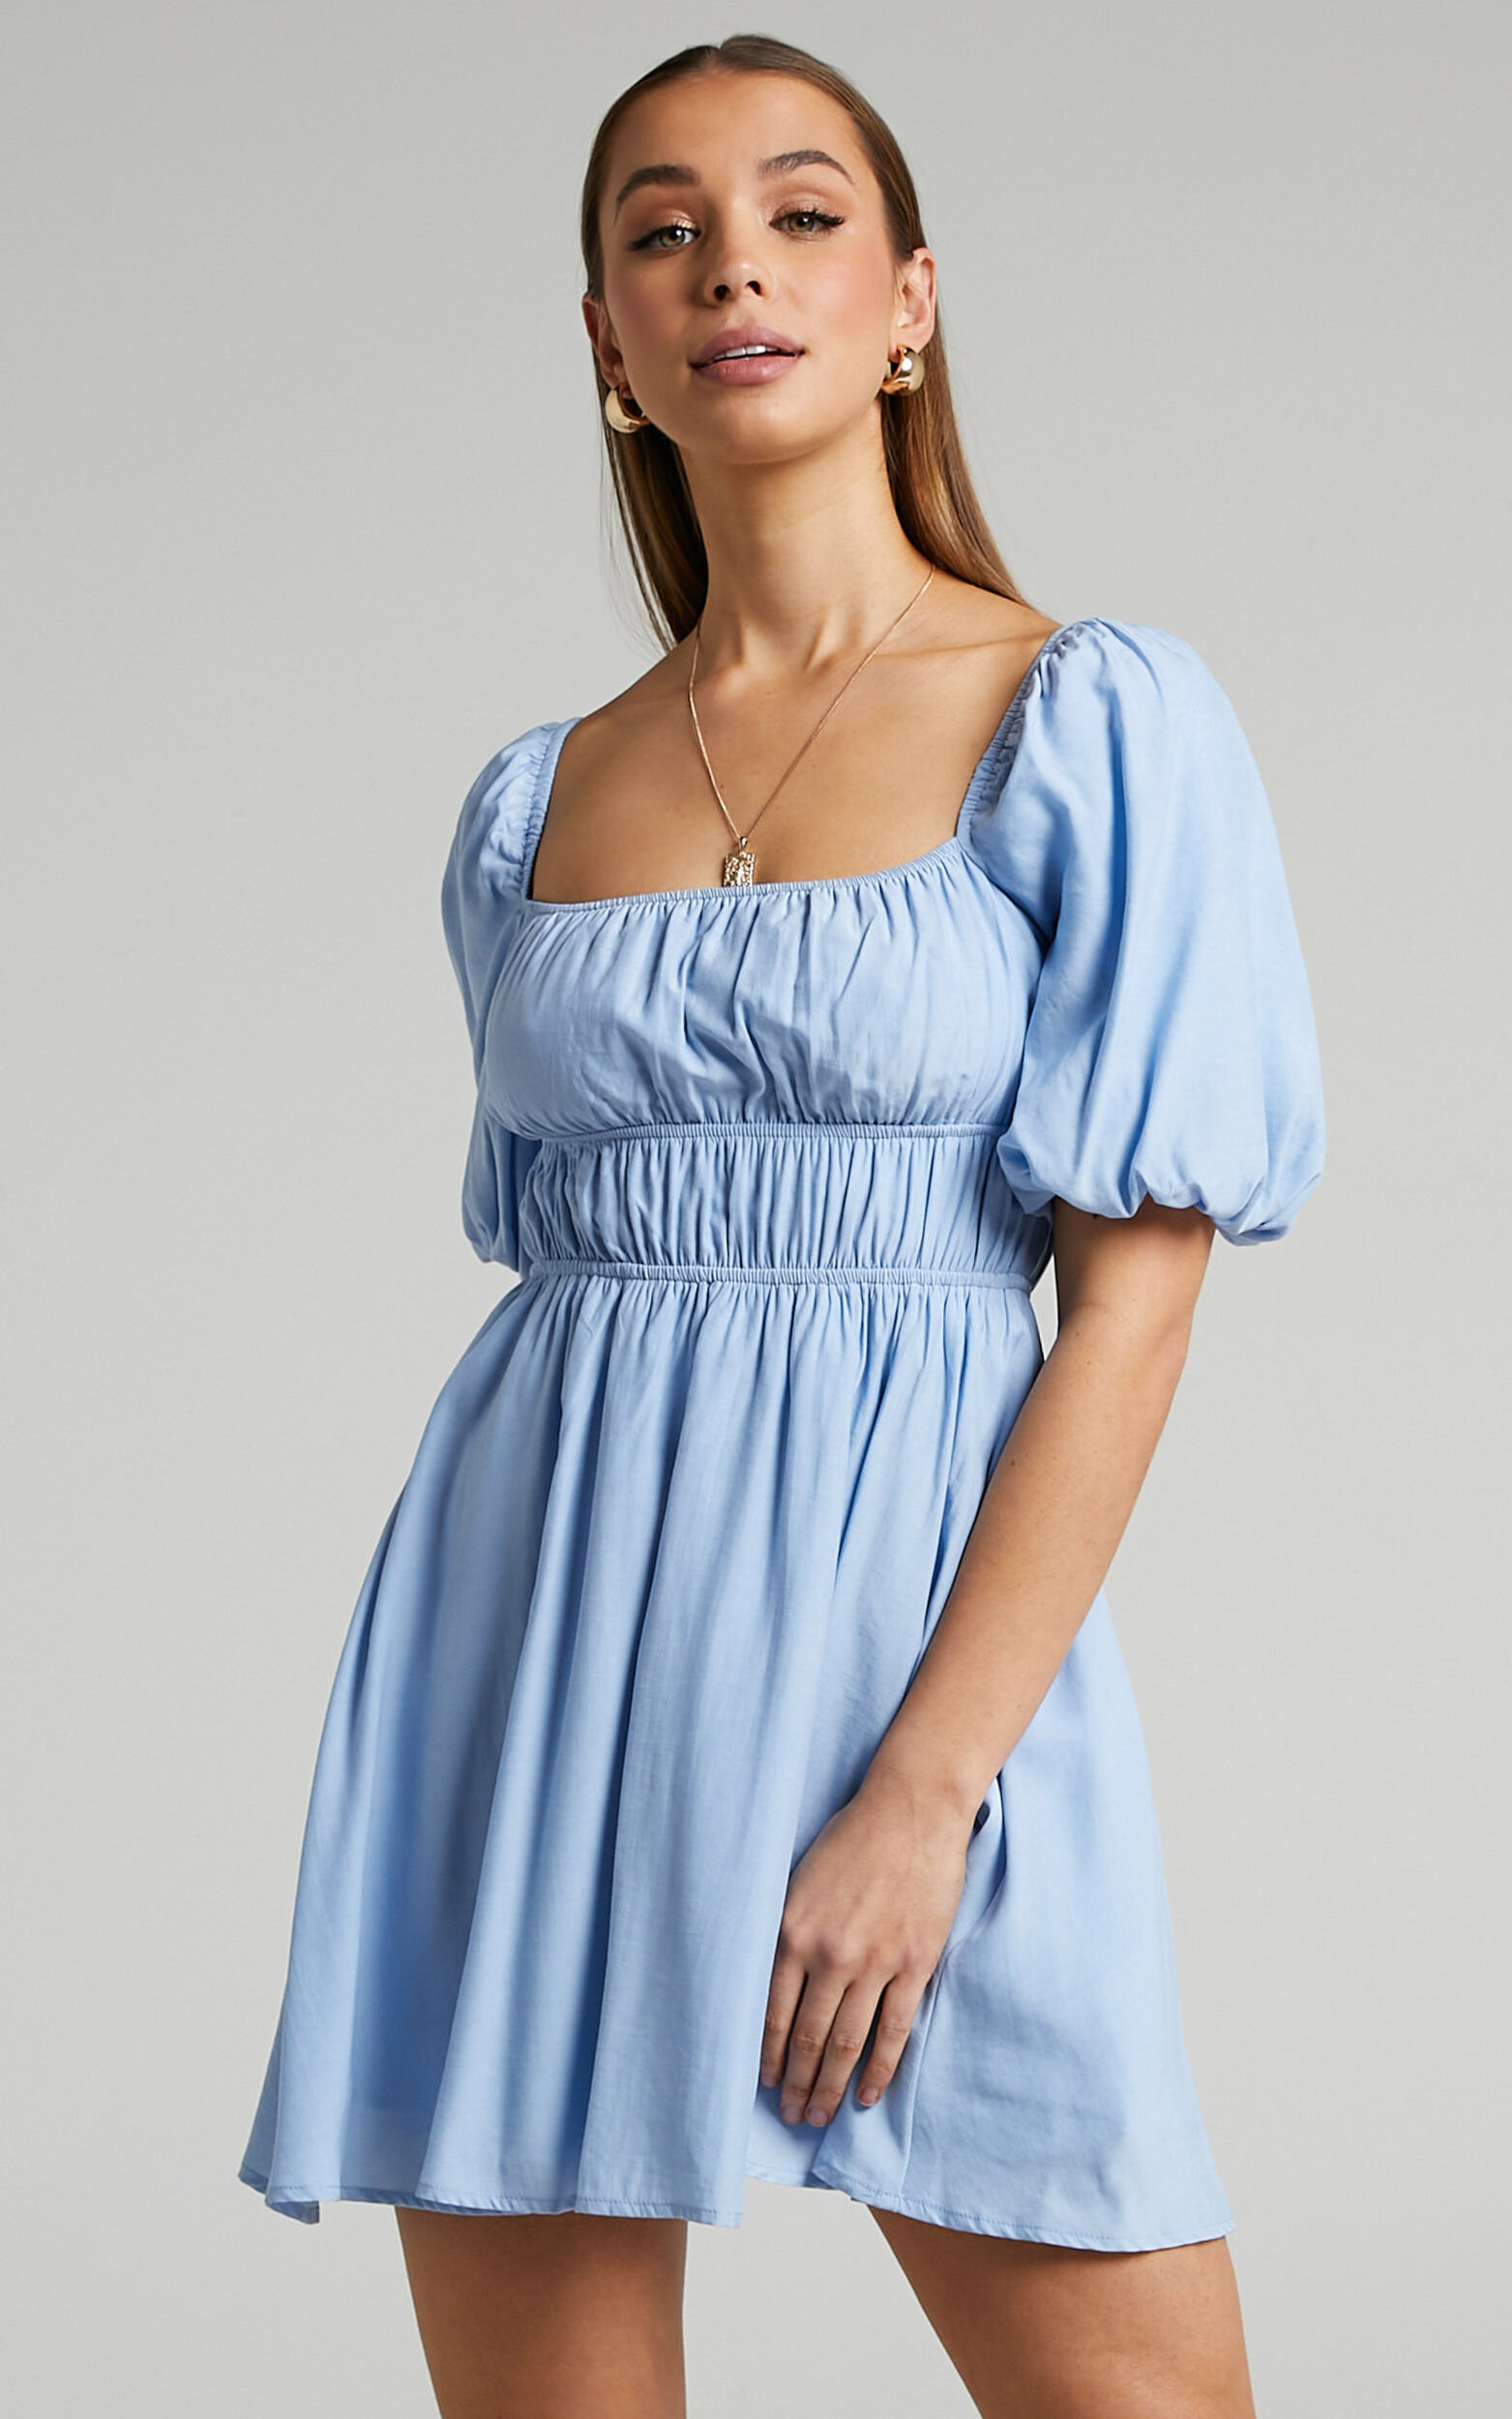 Maretta Mini Dress - Stretch Waist Square Neck Dress in Blue - 04, BLU1